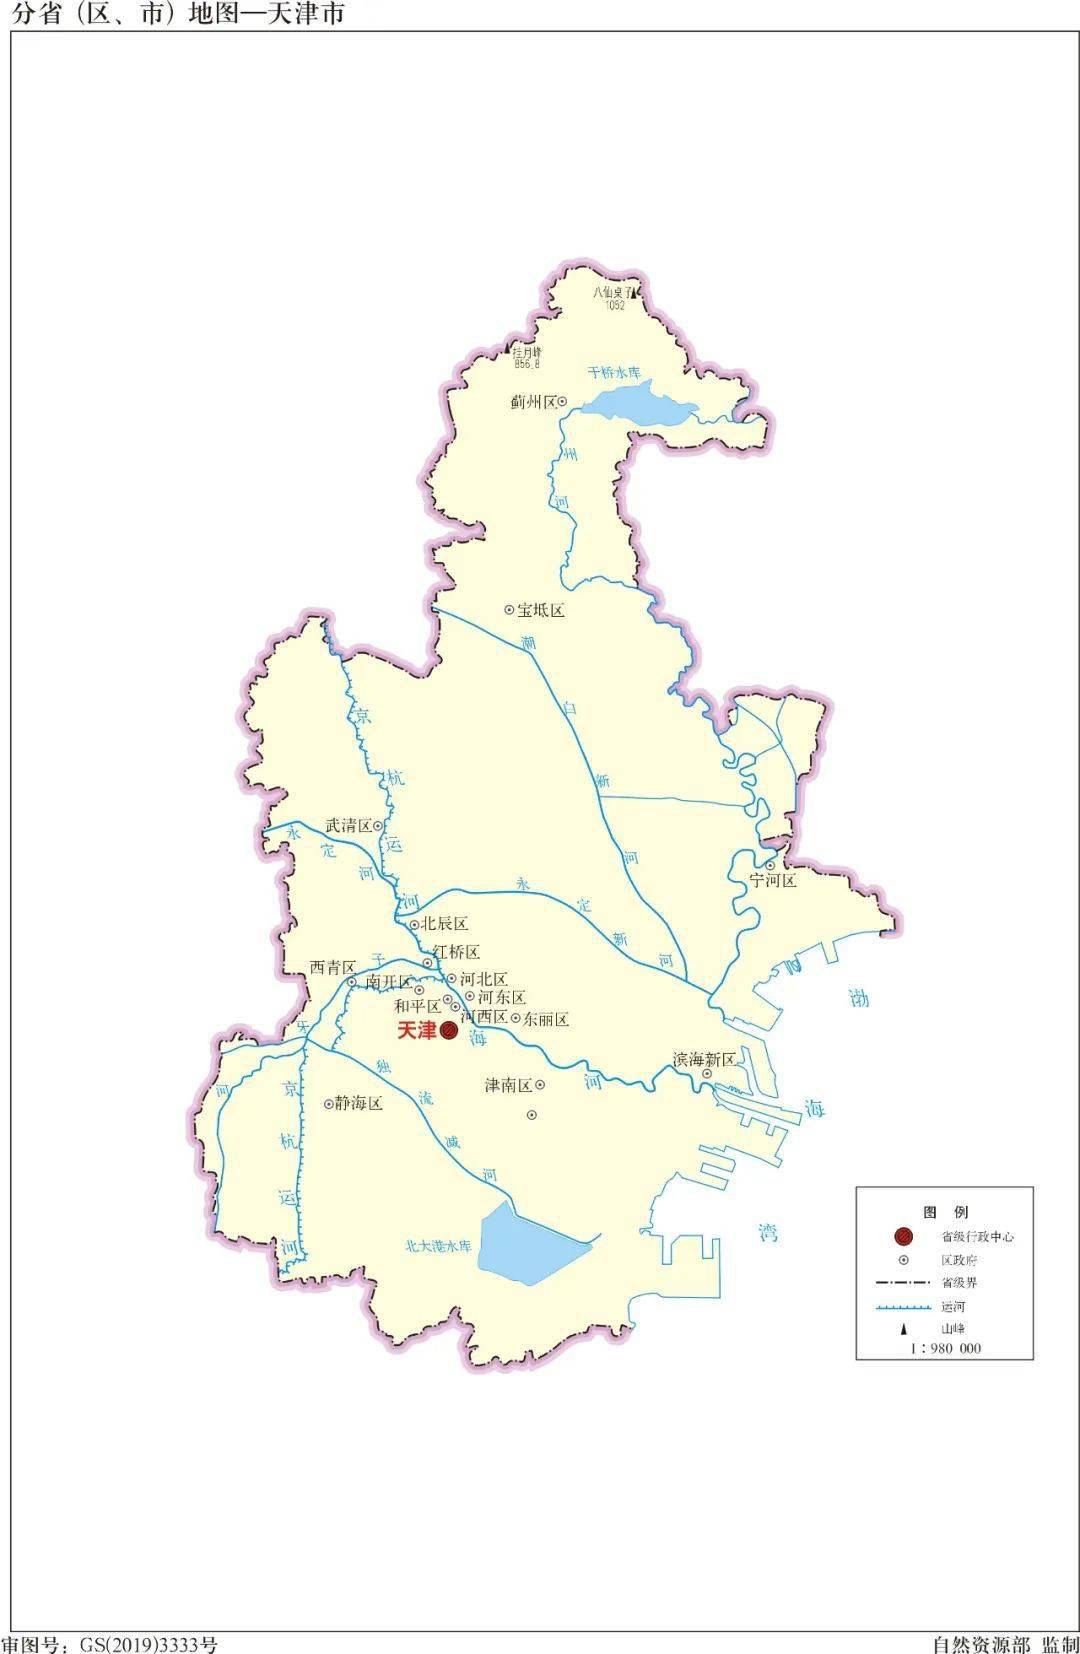 将全套河流水系地图分享给大家:中国境内主要有七大水系,从北方的